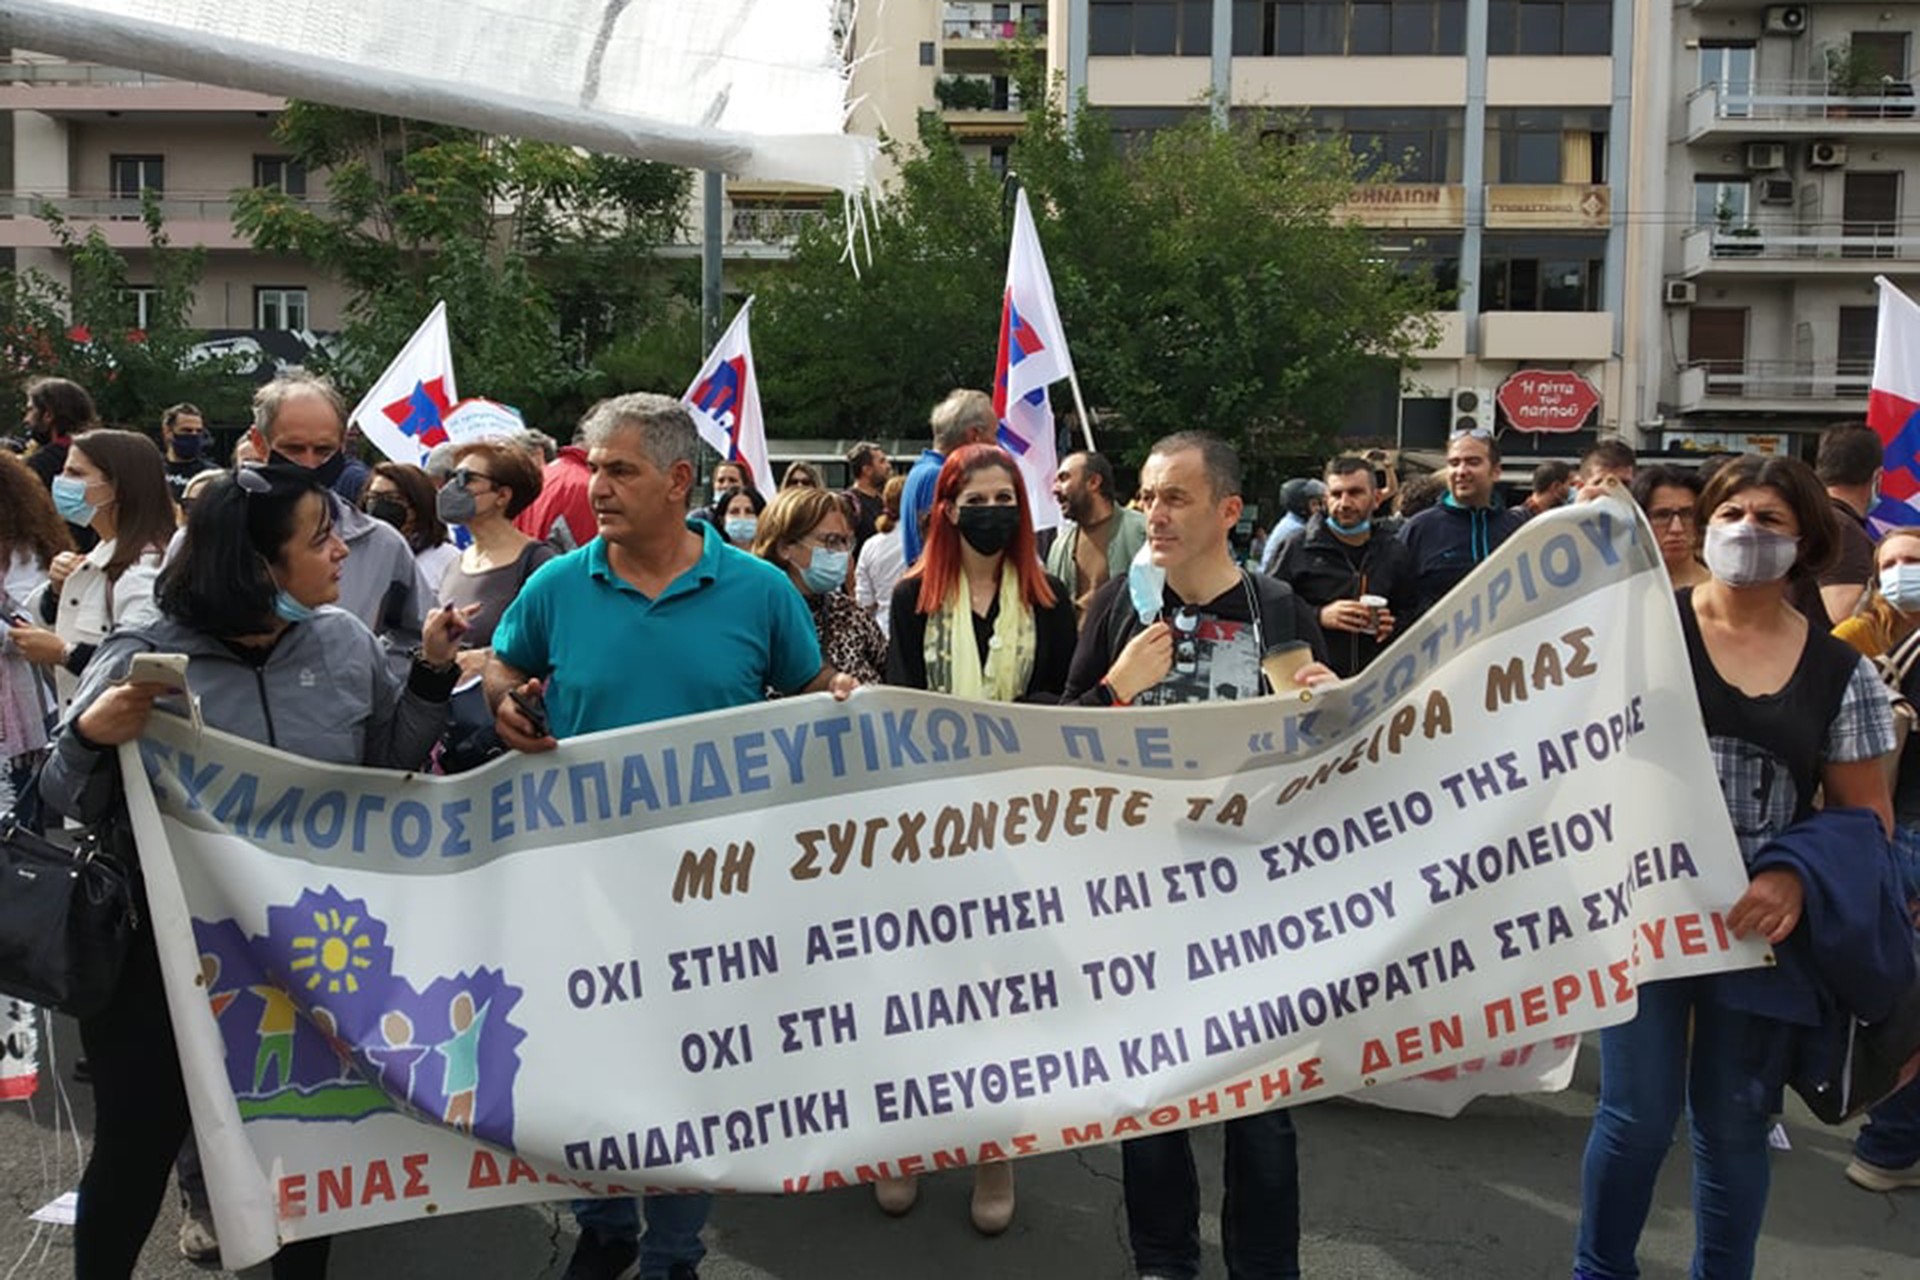 Μια φωτογραφία από την απεργία των εκπαιδευτικών στην Ελλάδα.